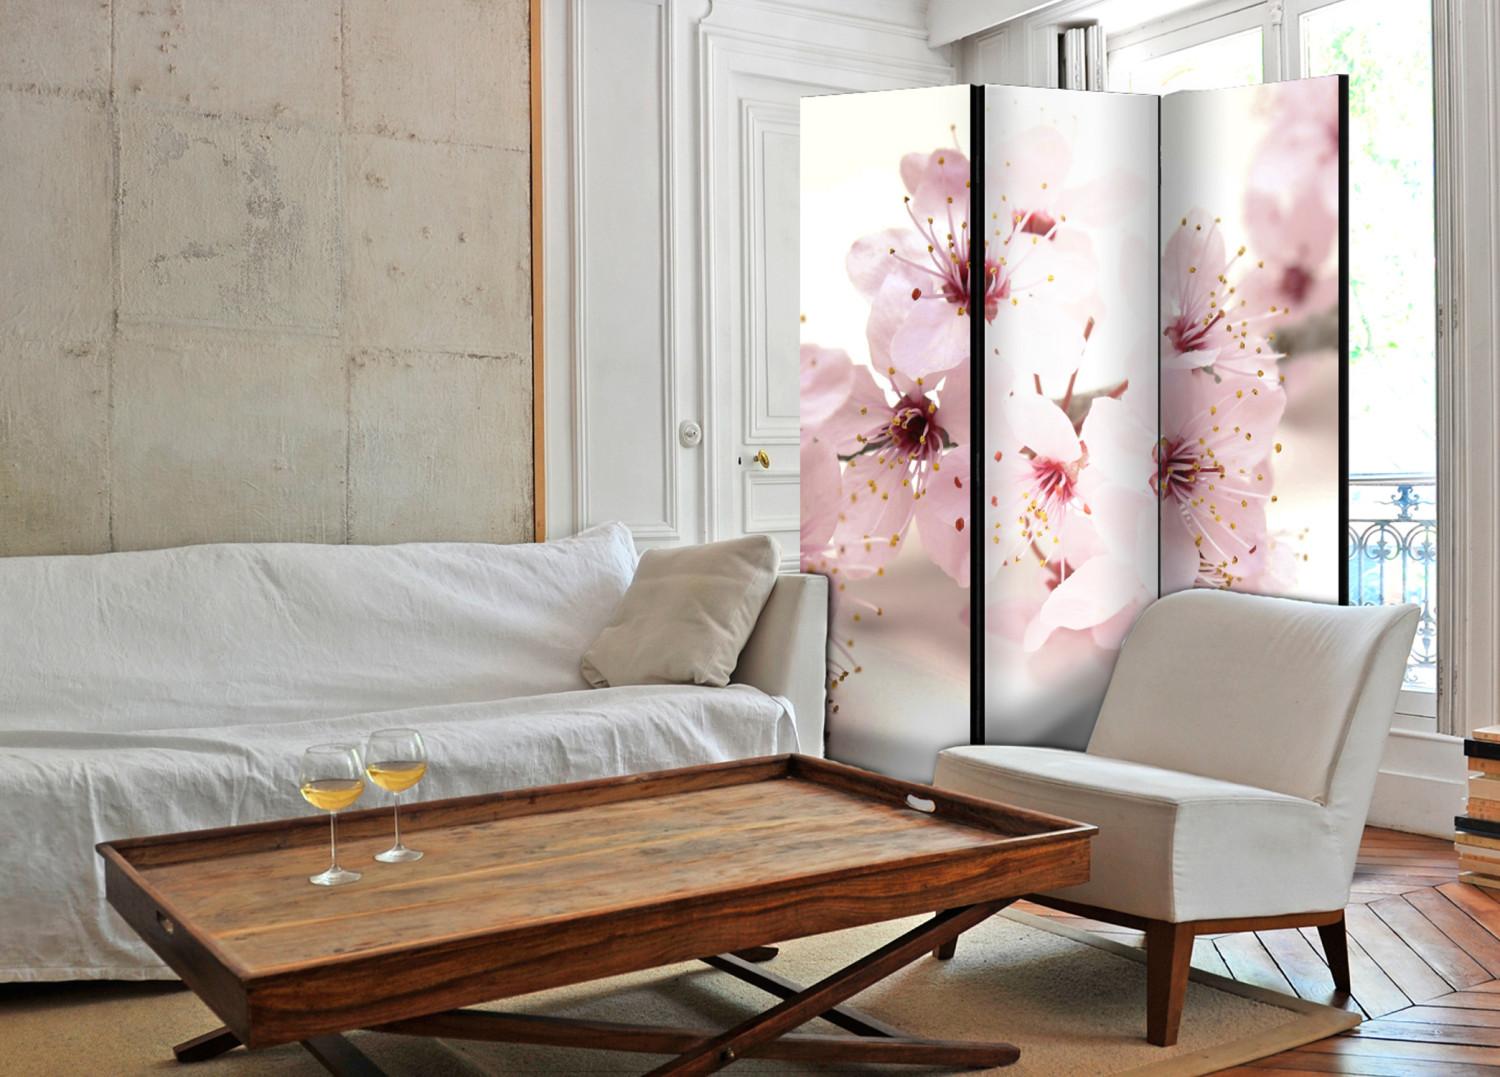 Biombo original Flor de cerezo - planta oriental rosa sobre fondo blanco en estilo Zen